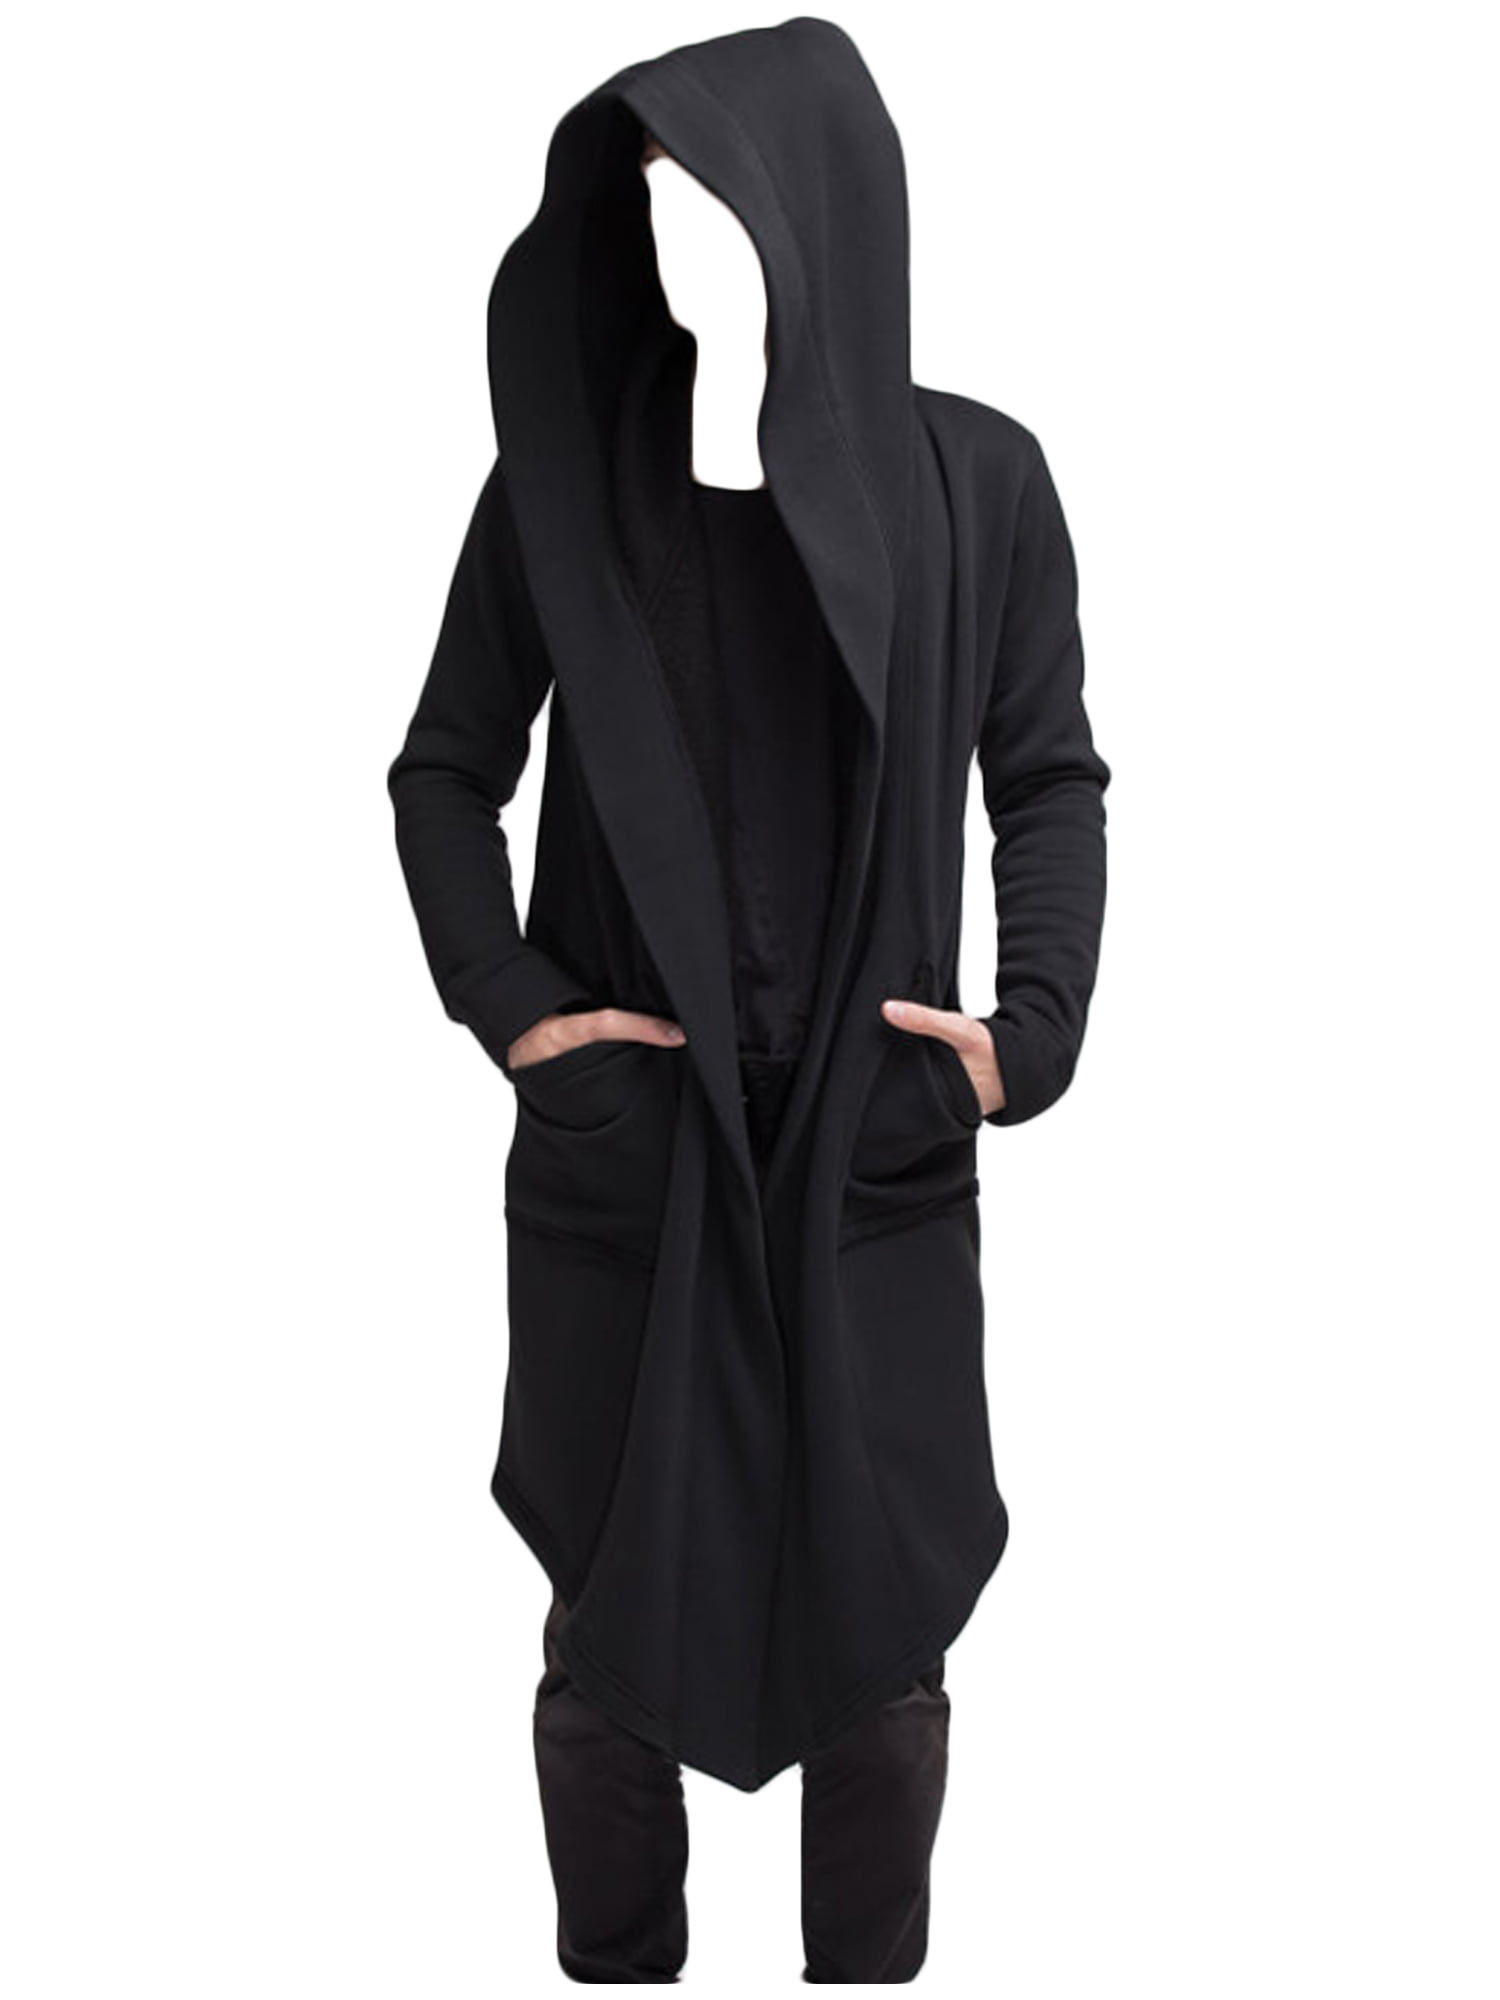 Men's Long Sleeve Hooded Cape Open Front Long Cardigan Outwear Cloaks Overcoats 